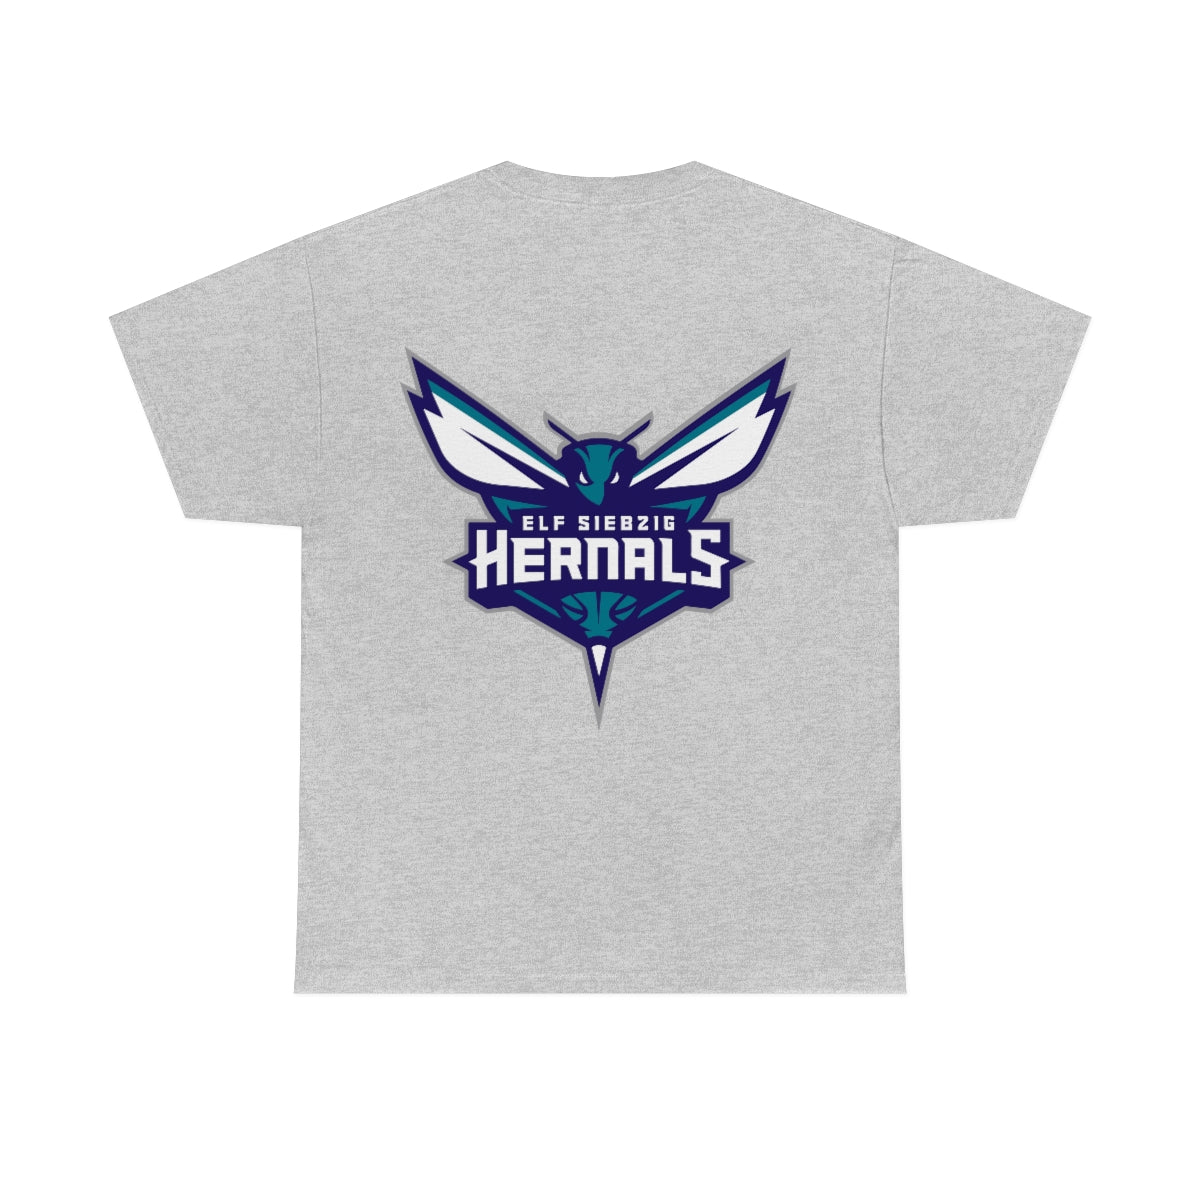 Hoodz T-shirt - 1170 Hernals